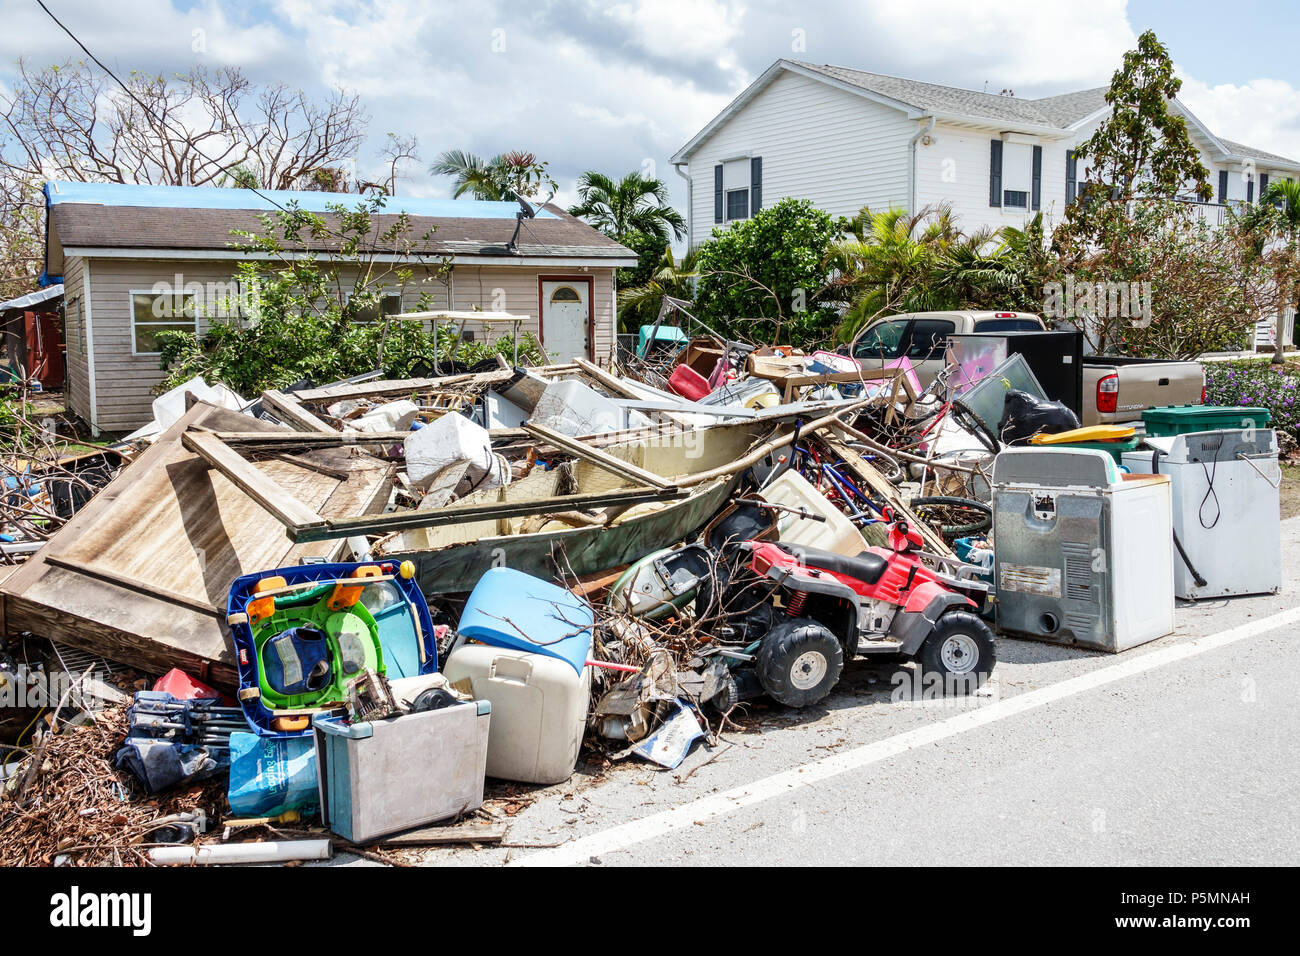 Everglades City Florida,après l'ouragan Irma,maisons résidences,nettoyage de reprise après sinistre de tempête,inondation dégâts destruction séquelles,déchets,de Banque D'Images